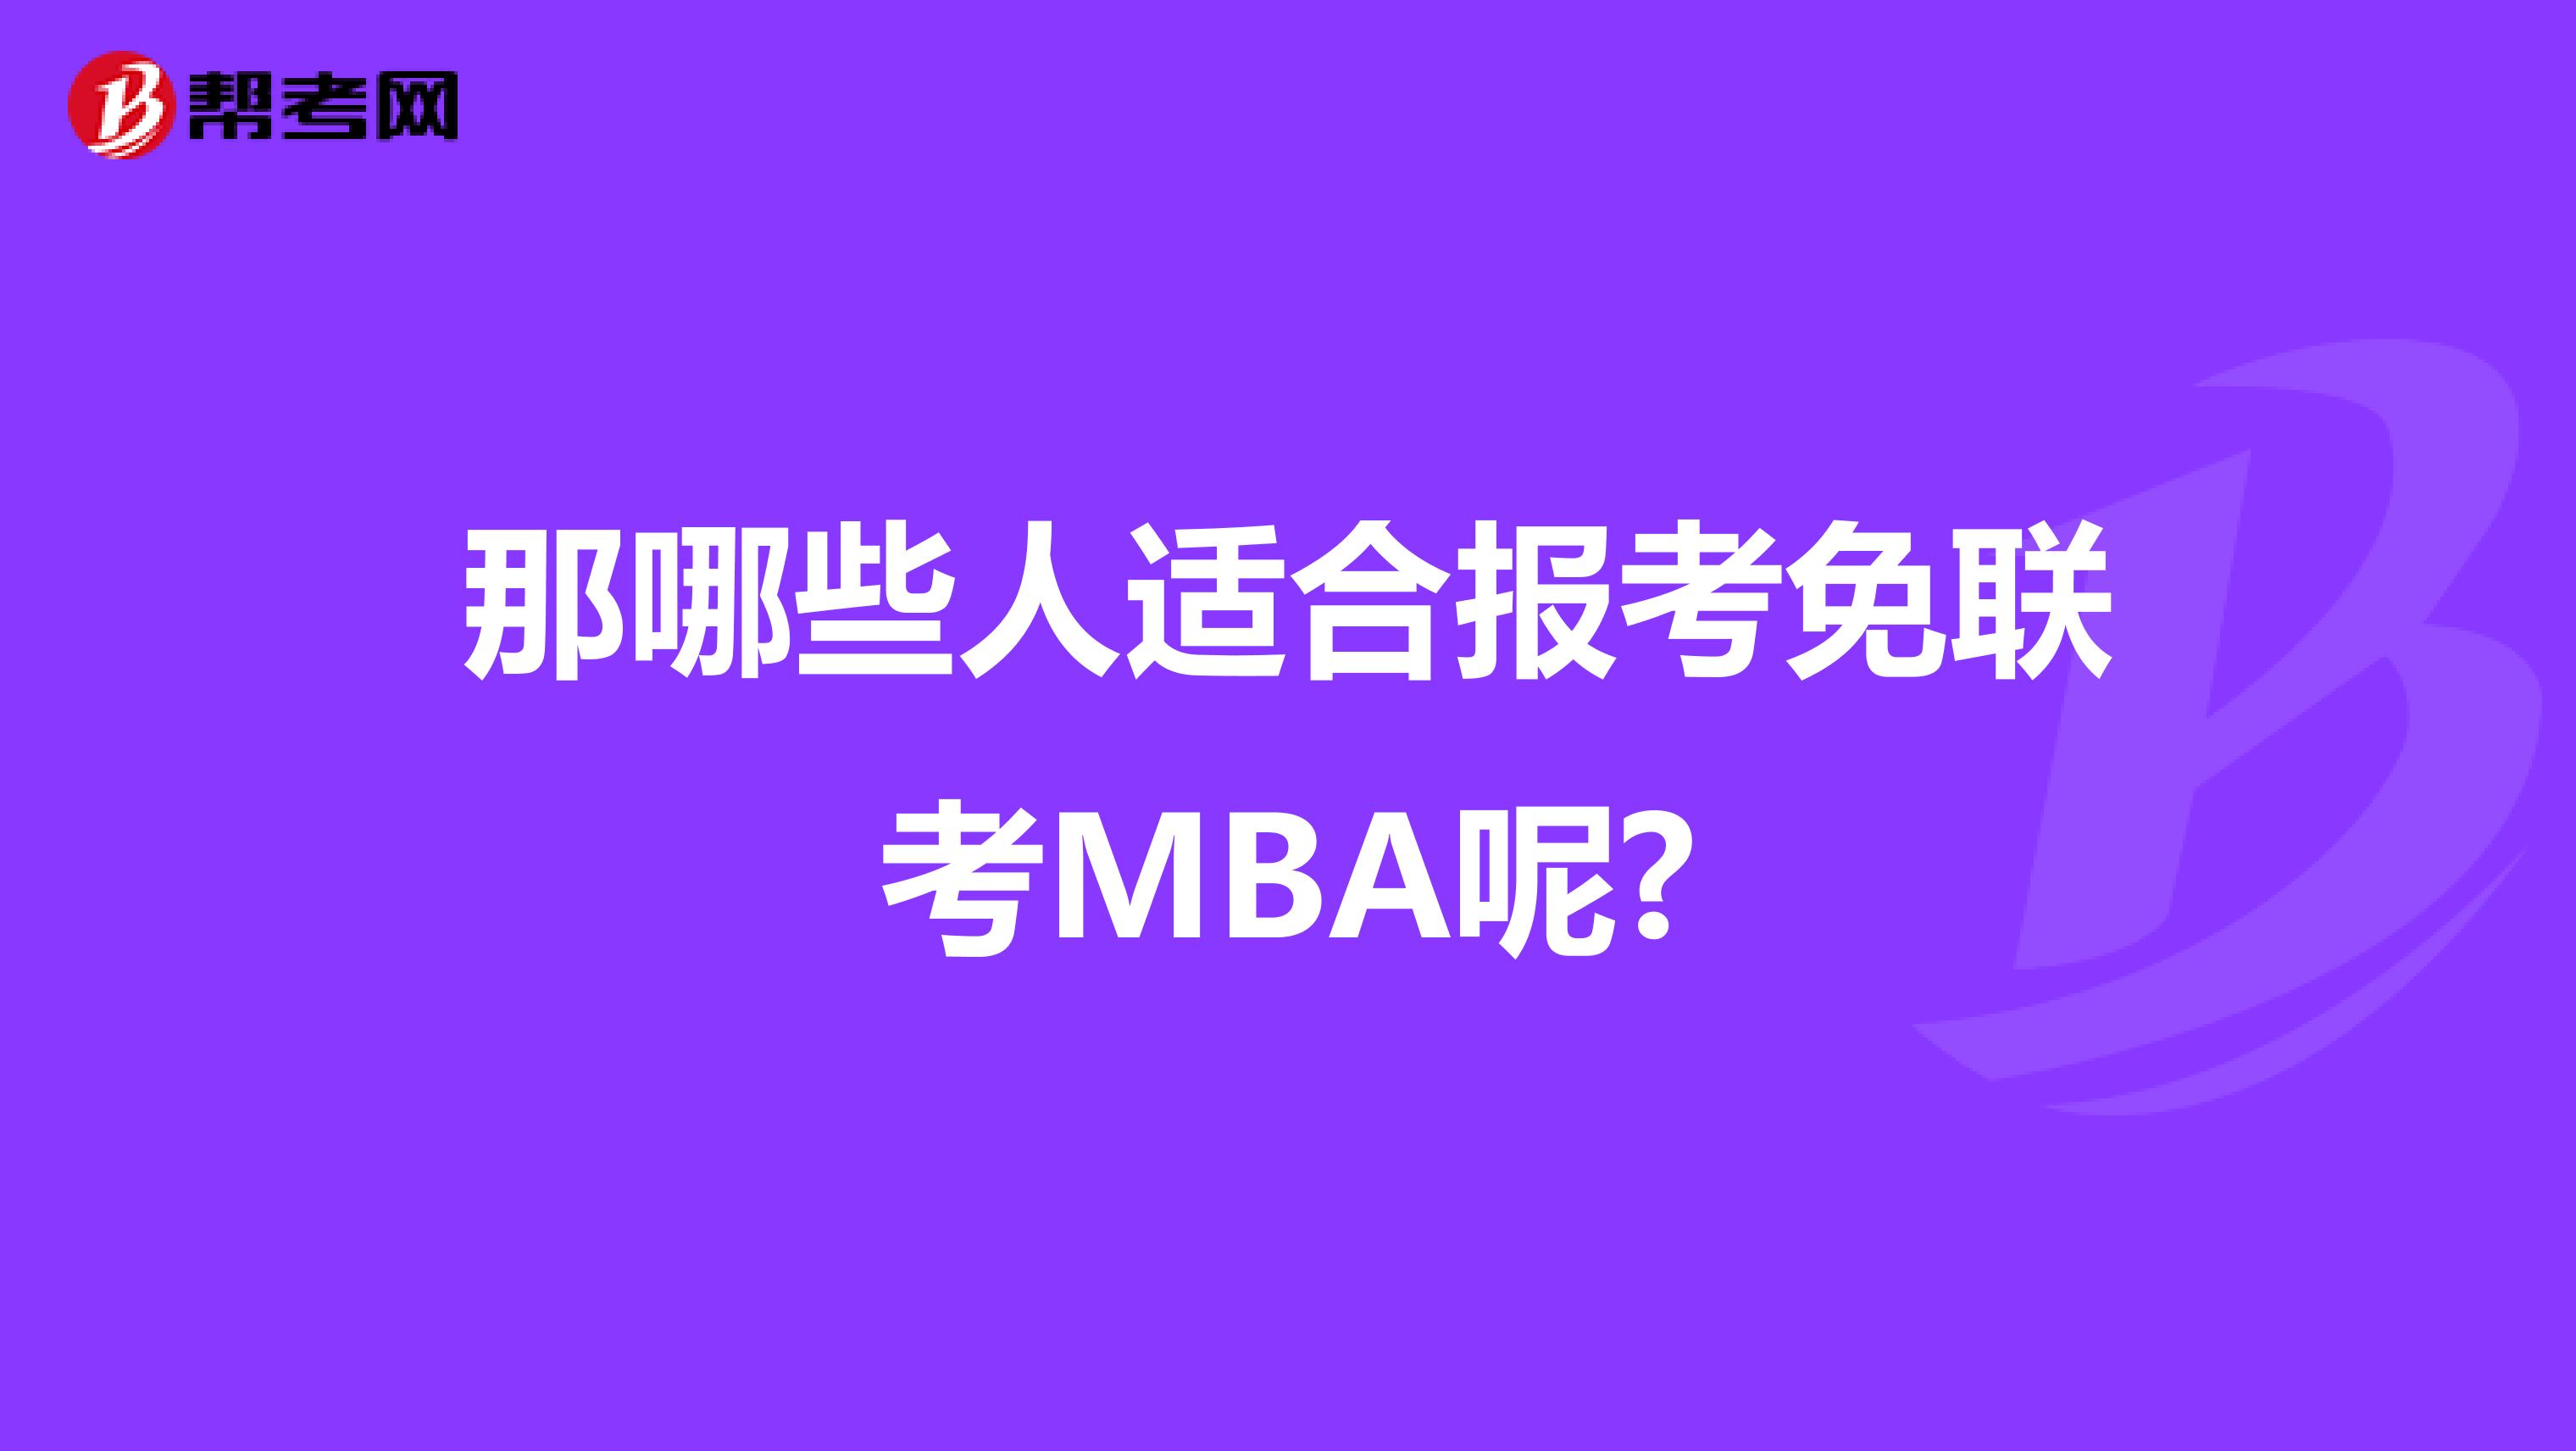 那哪些人适合报考免联考MBA呢?